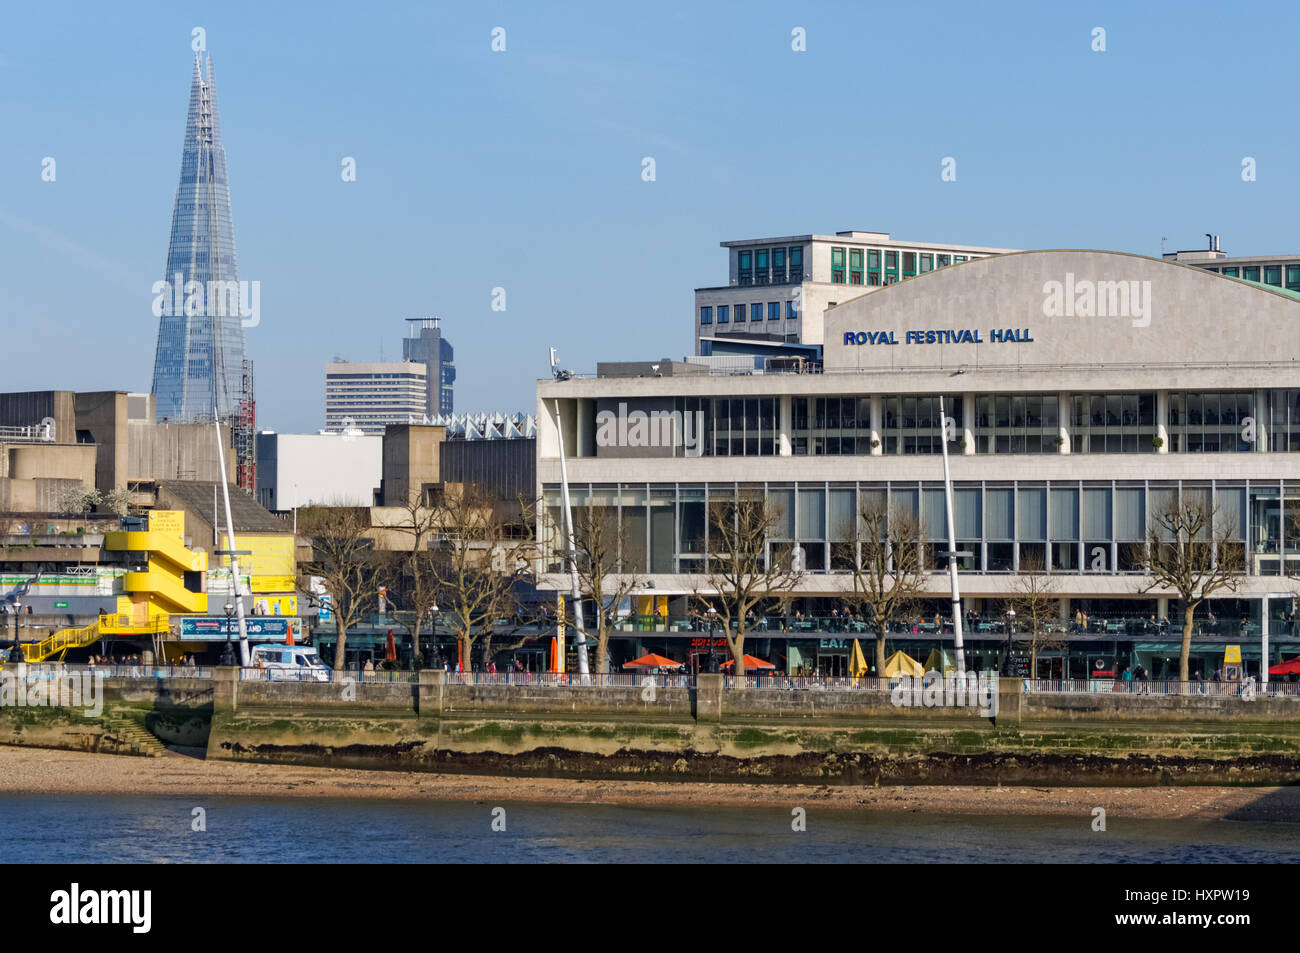 Royal Festival Hall à Southbank Centre avec le fragment dans l'arrière-plan, Londres Angleterre Royaume-Uni UK Banque D'Images